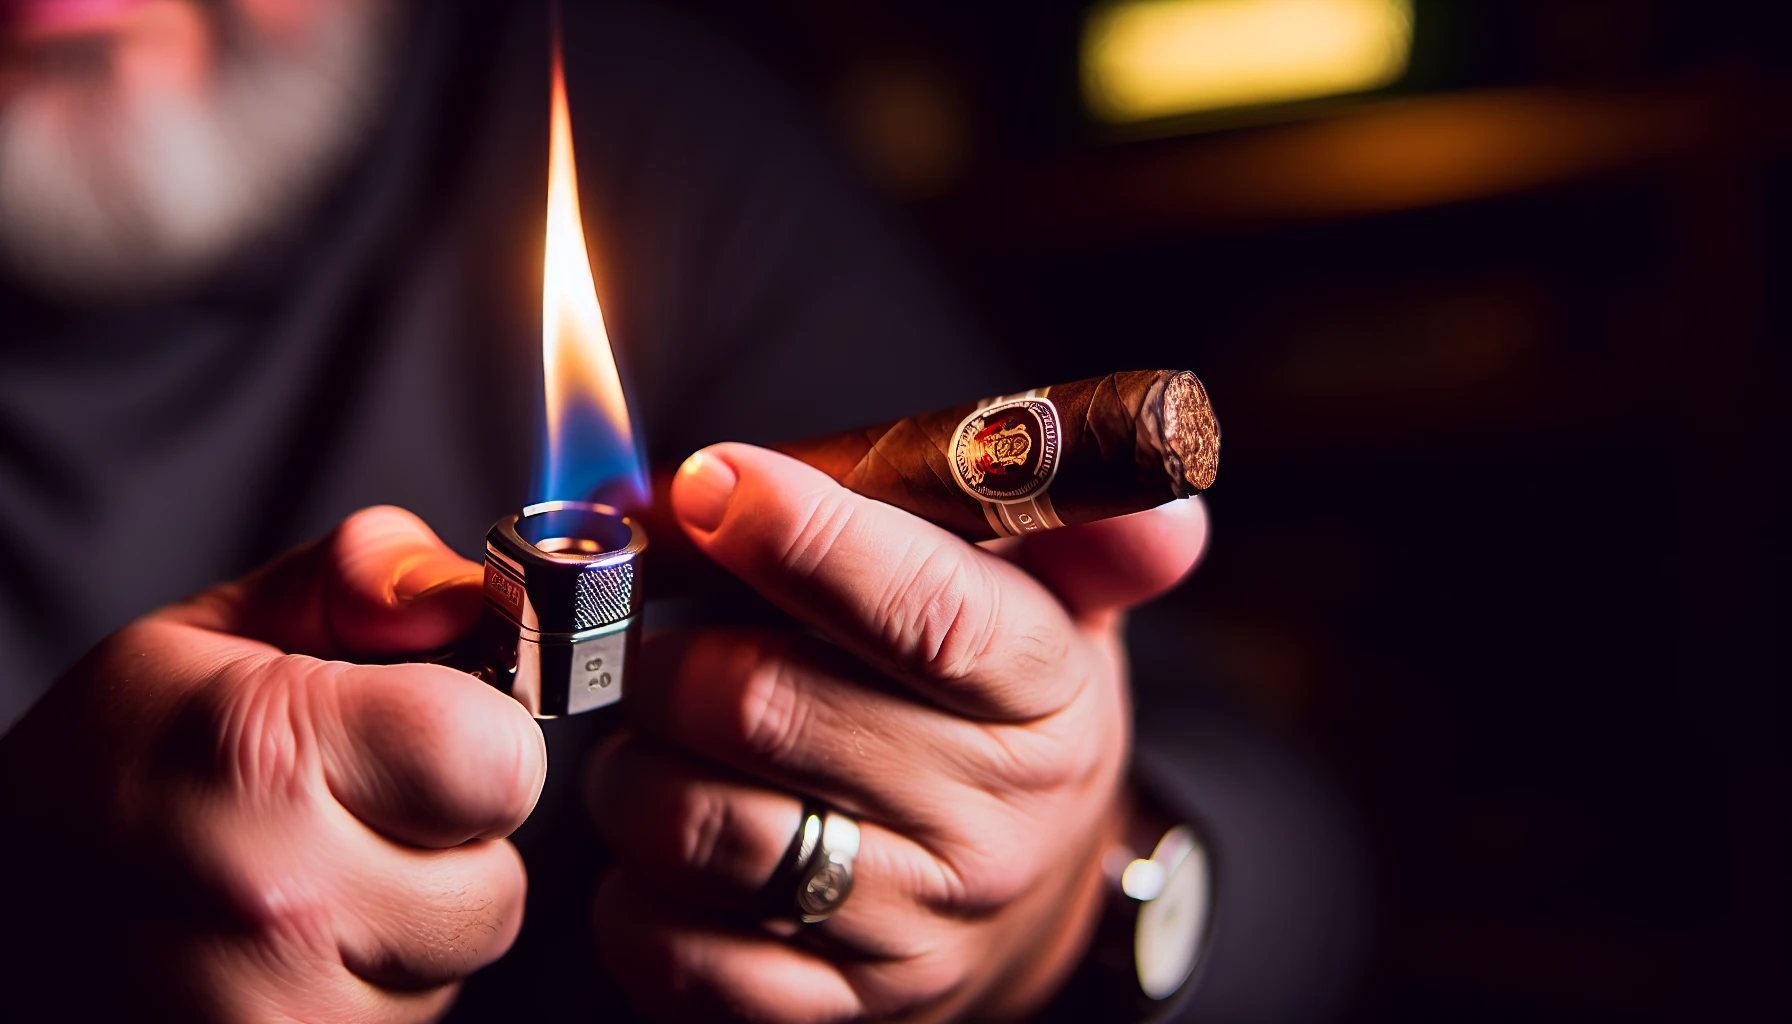 A close-up of a lit Hoyo de Monterrey Dark Sumatra No. 1 cigar